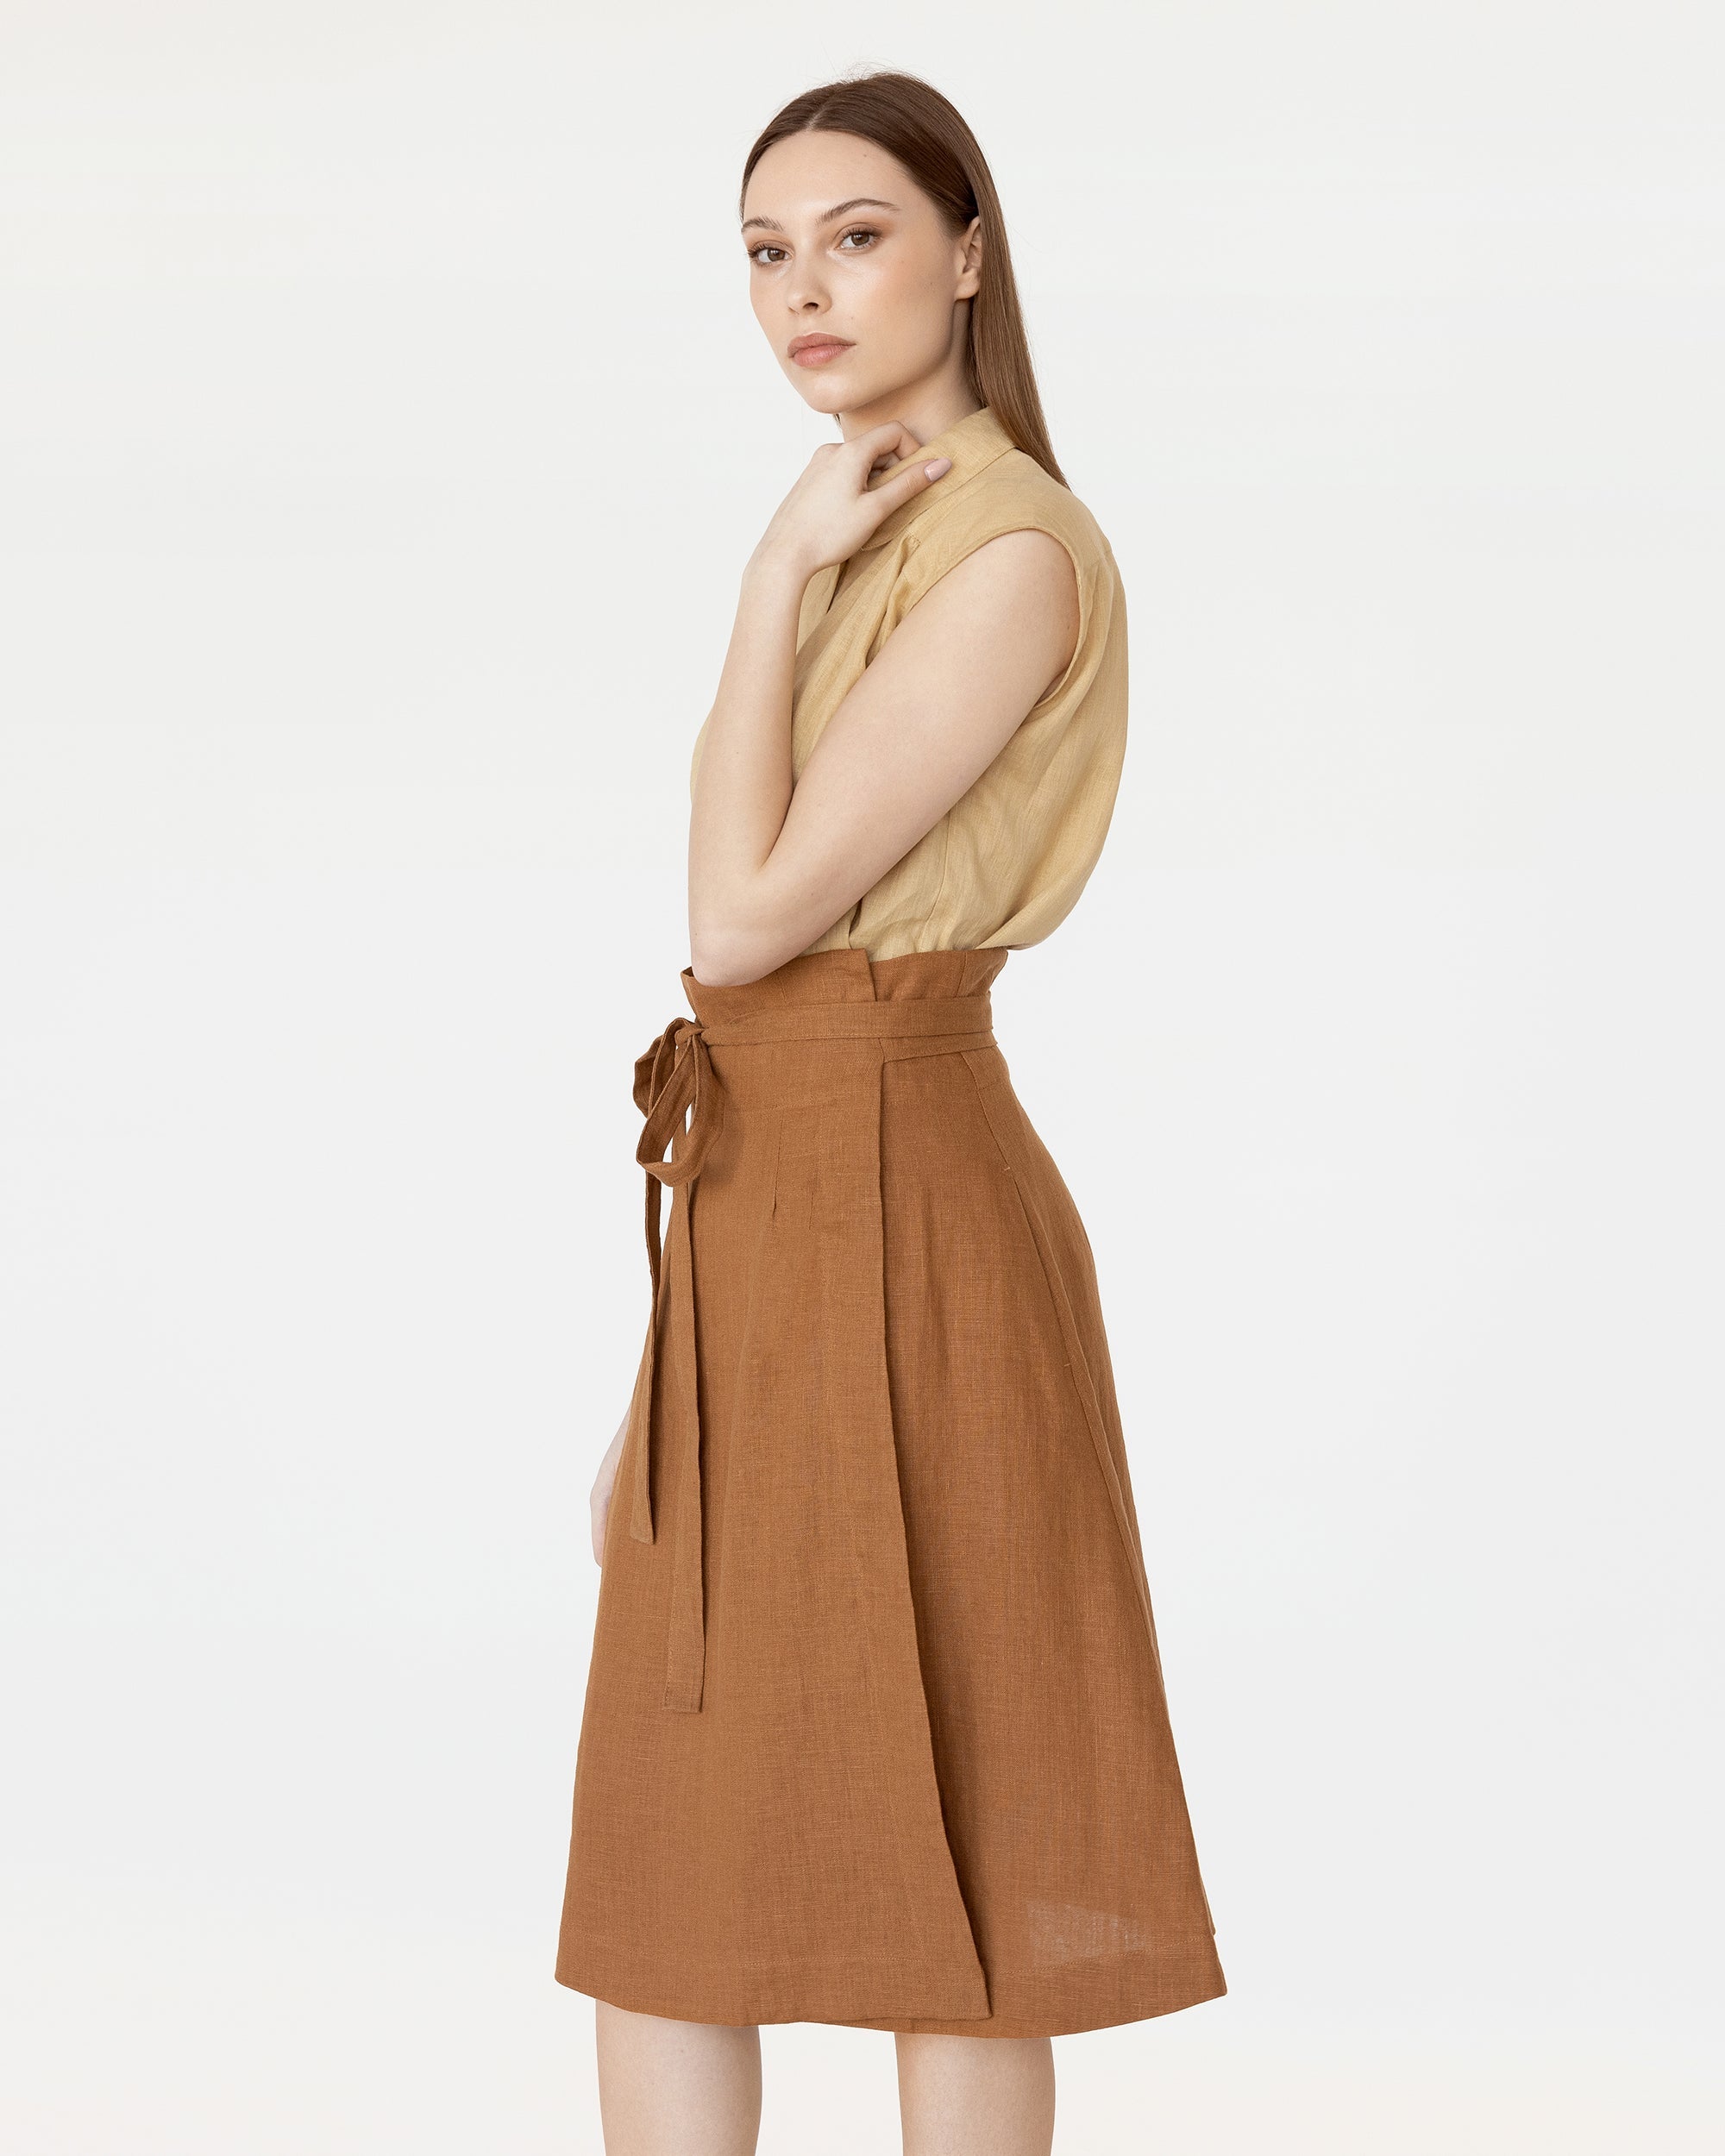 High-Waisted Linen Wrap Skirt in Cinnamon | MagicLinen